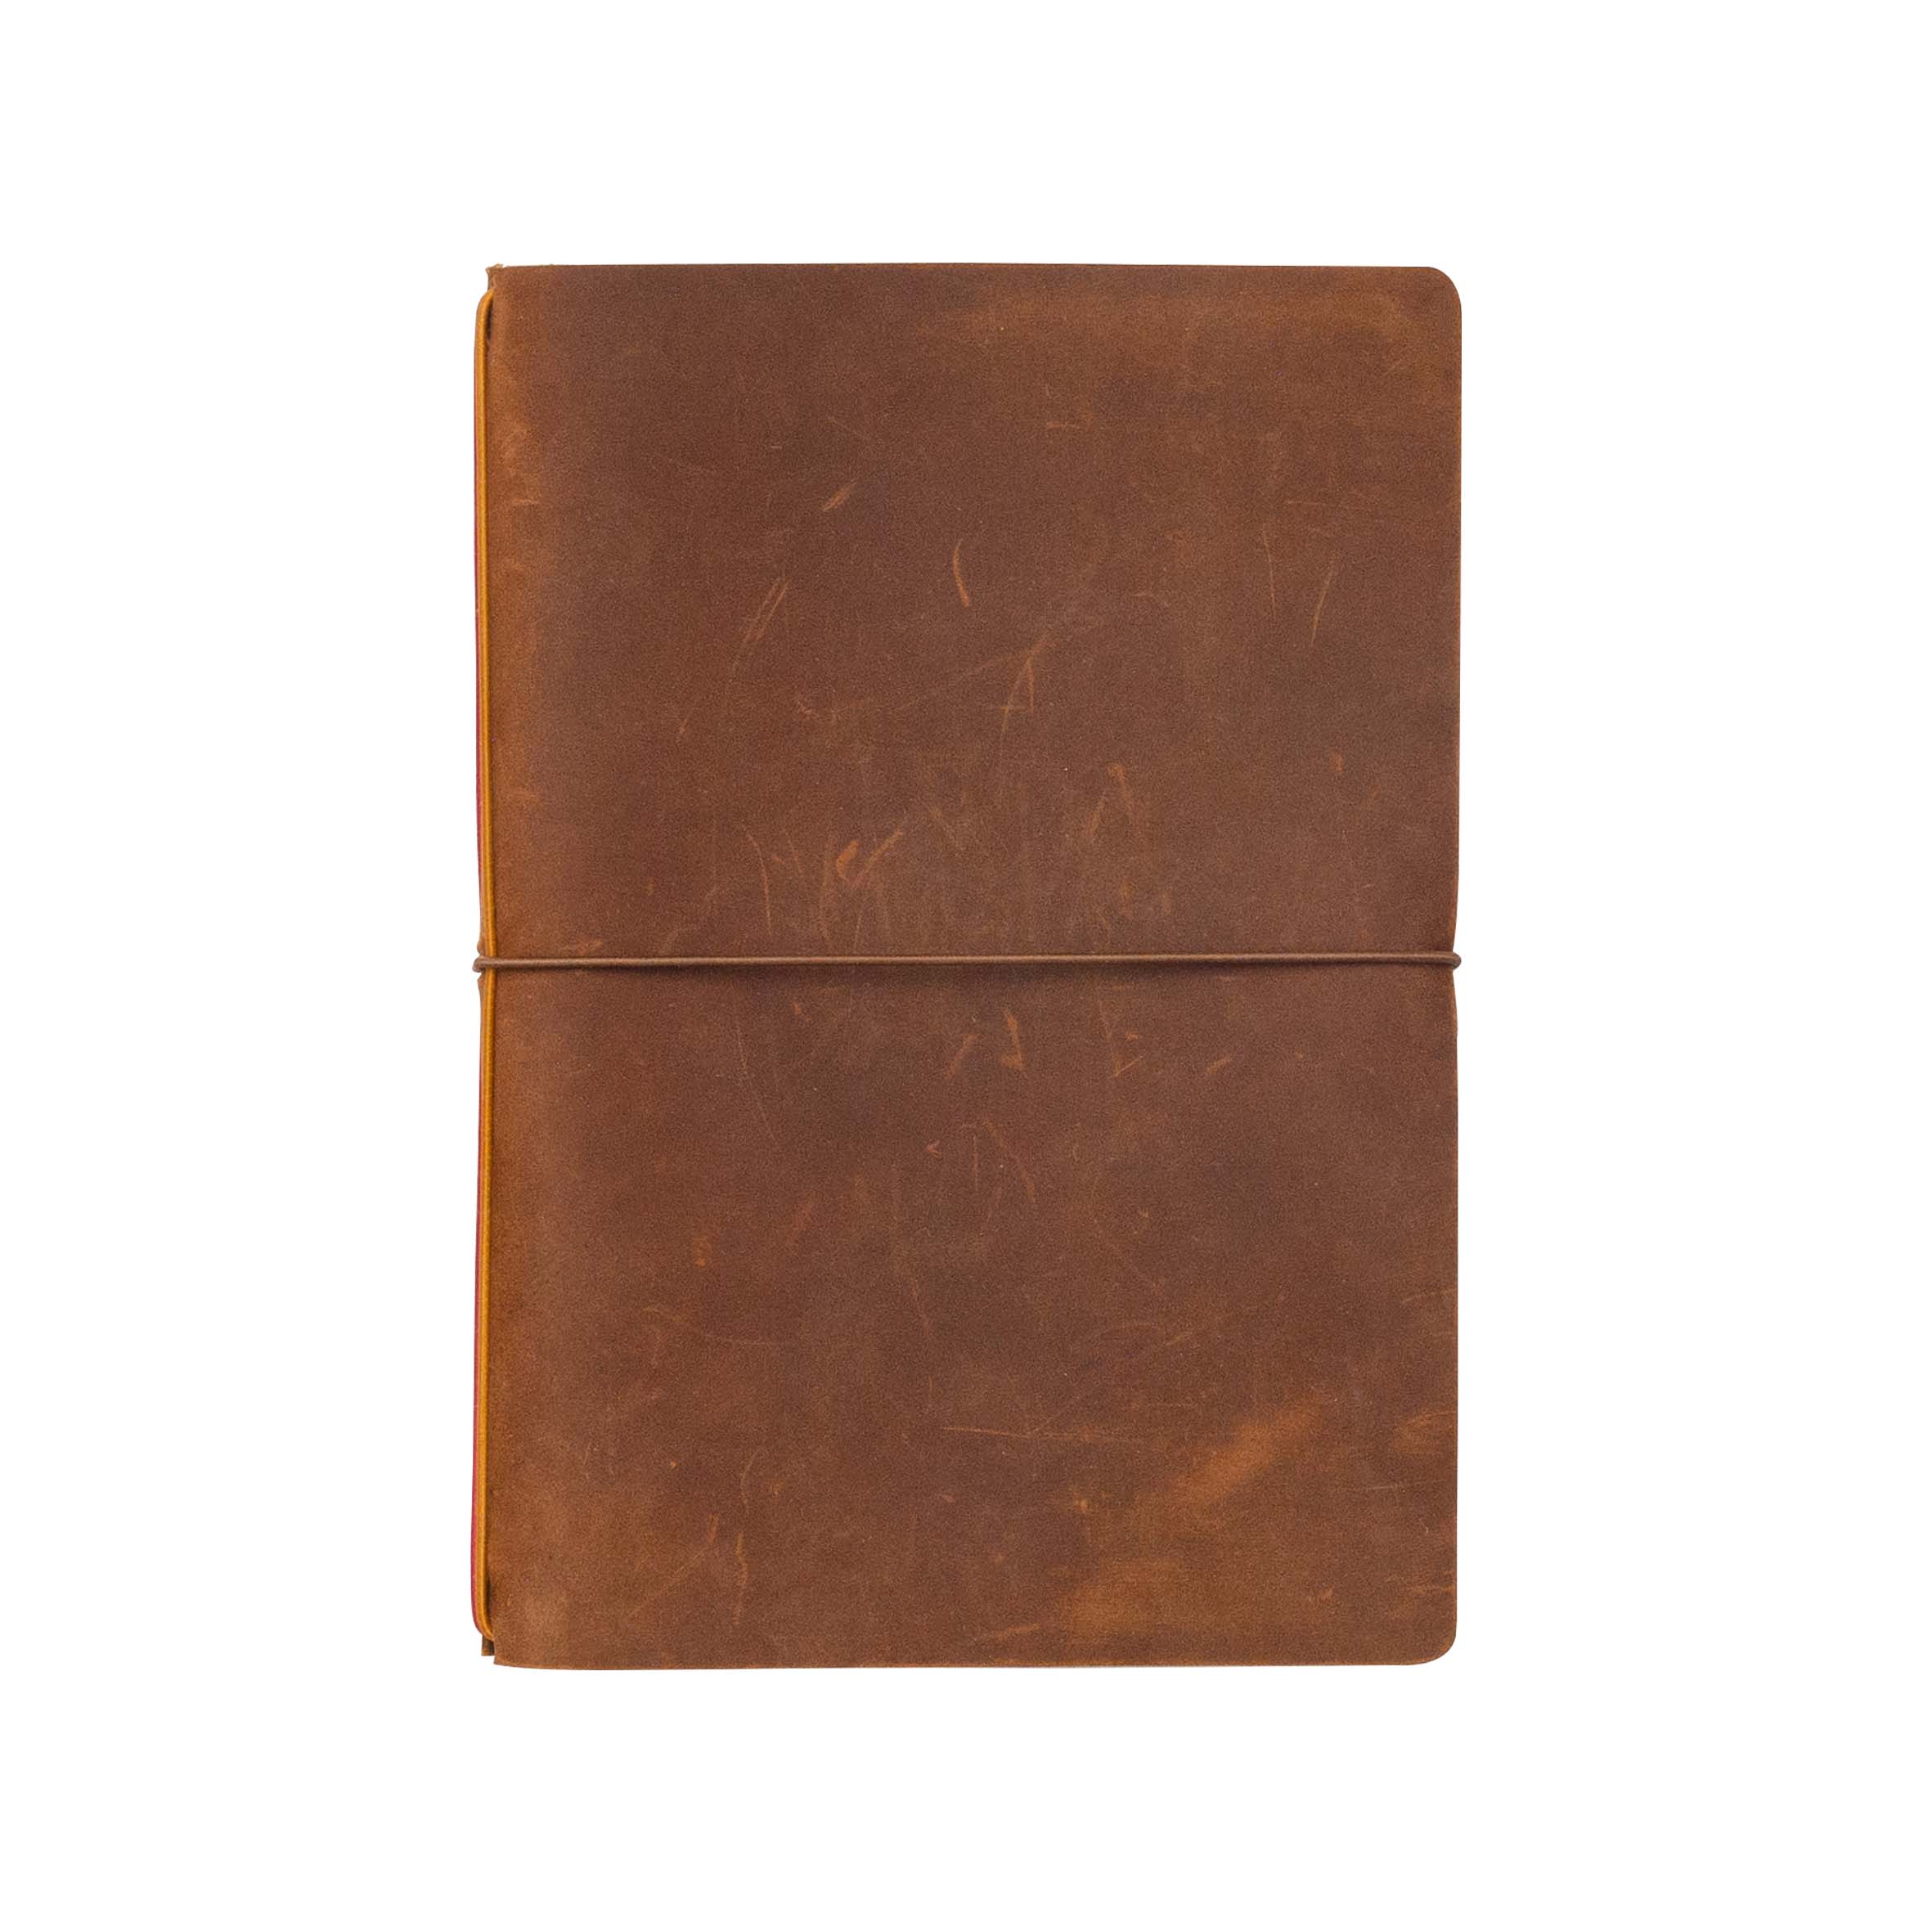 Enless Explorer Refillable Leather Journal 